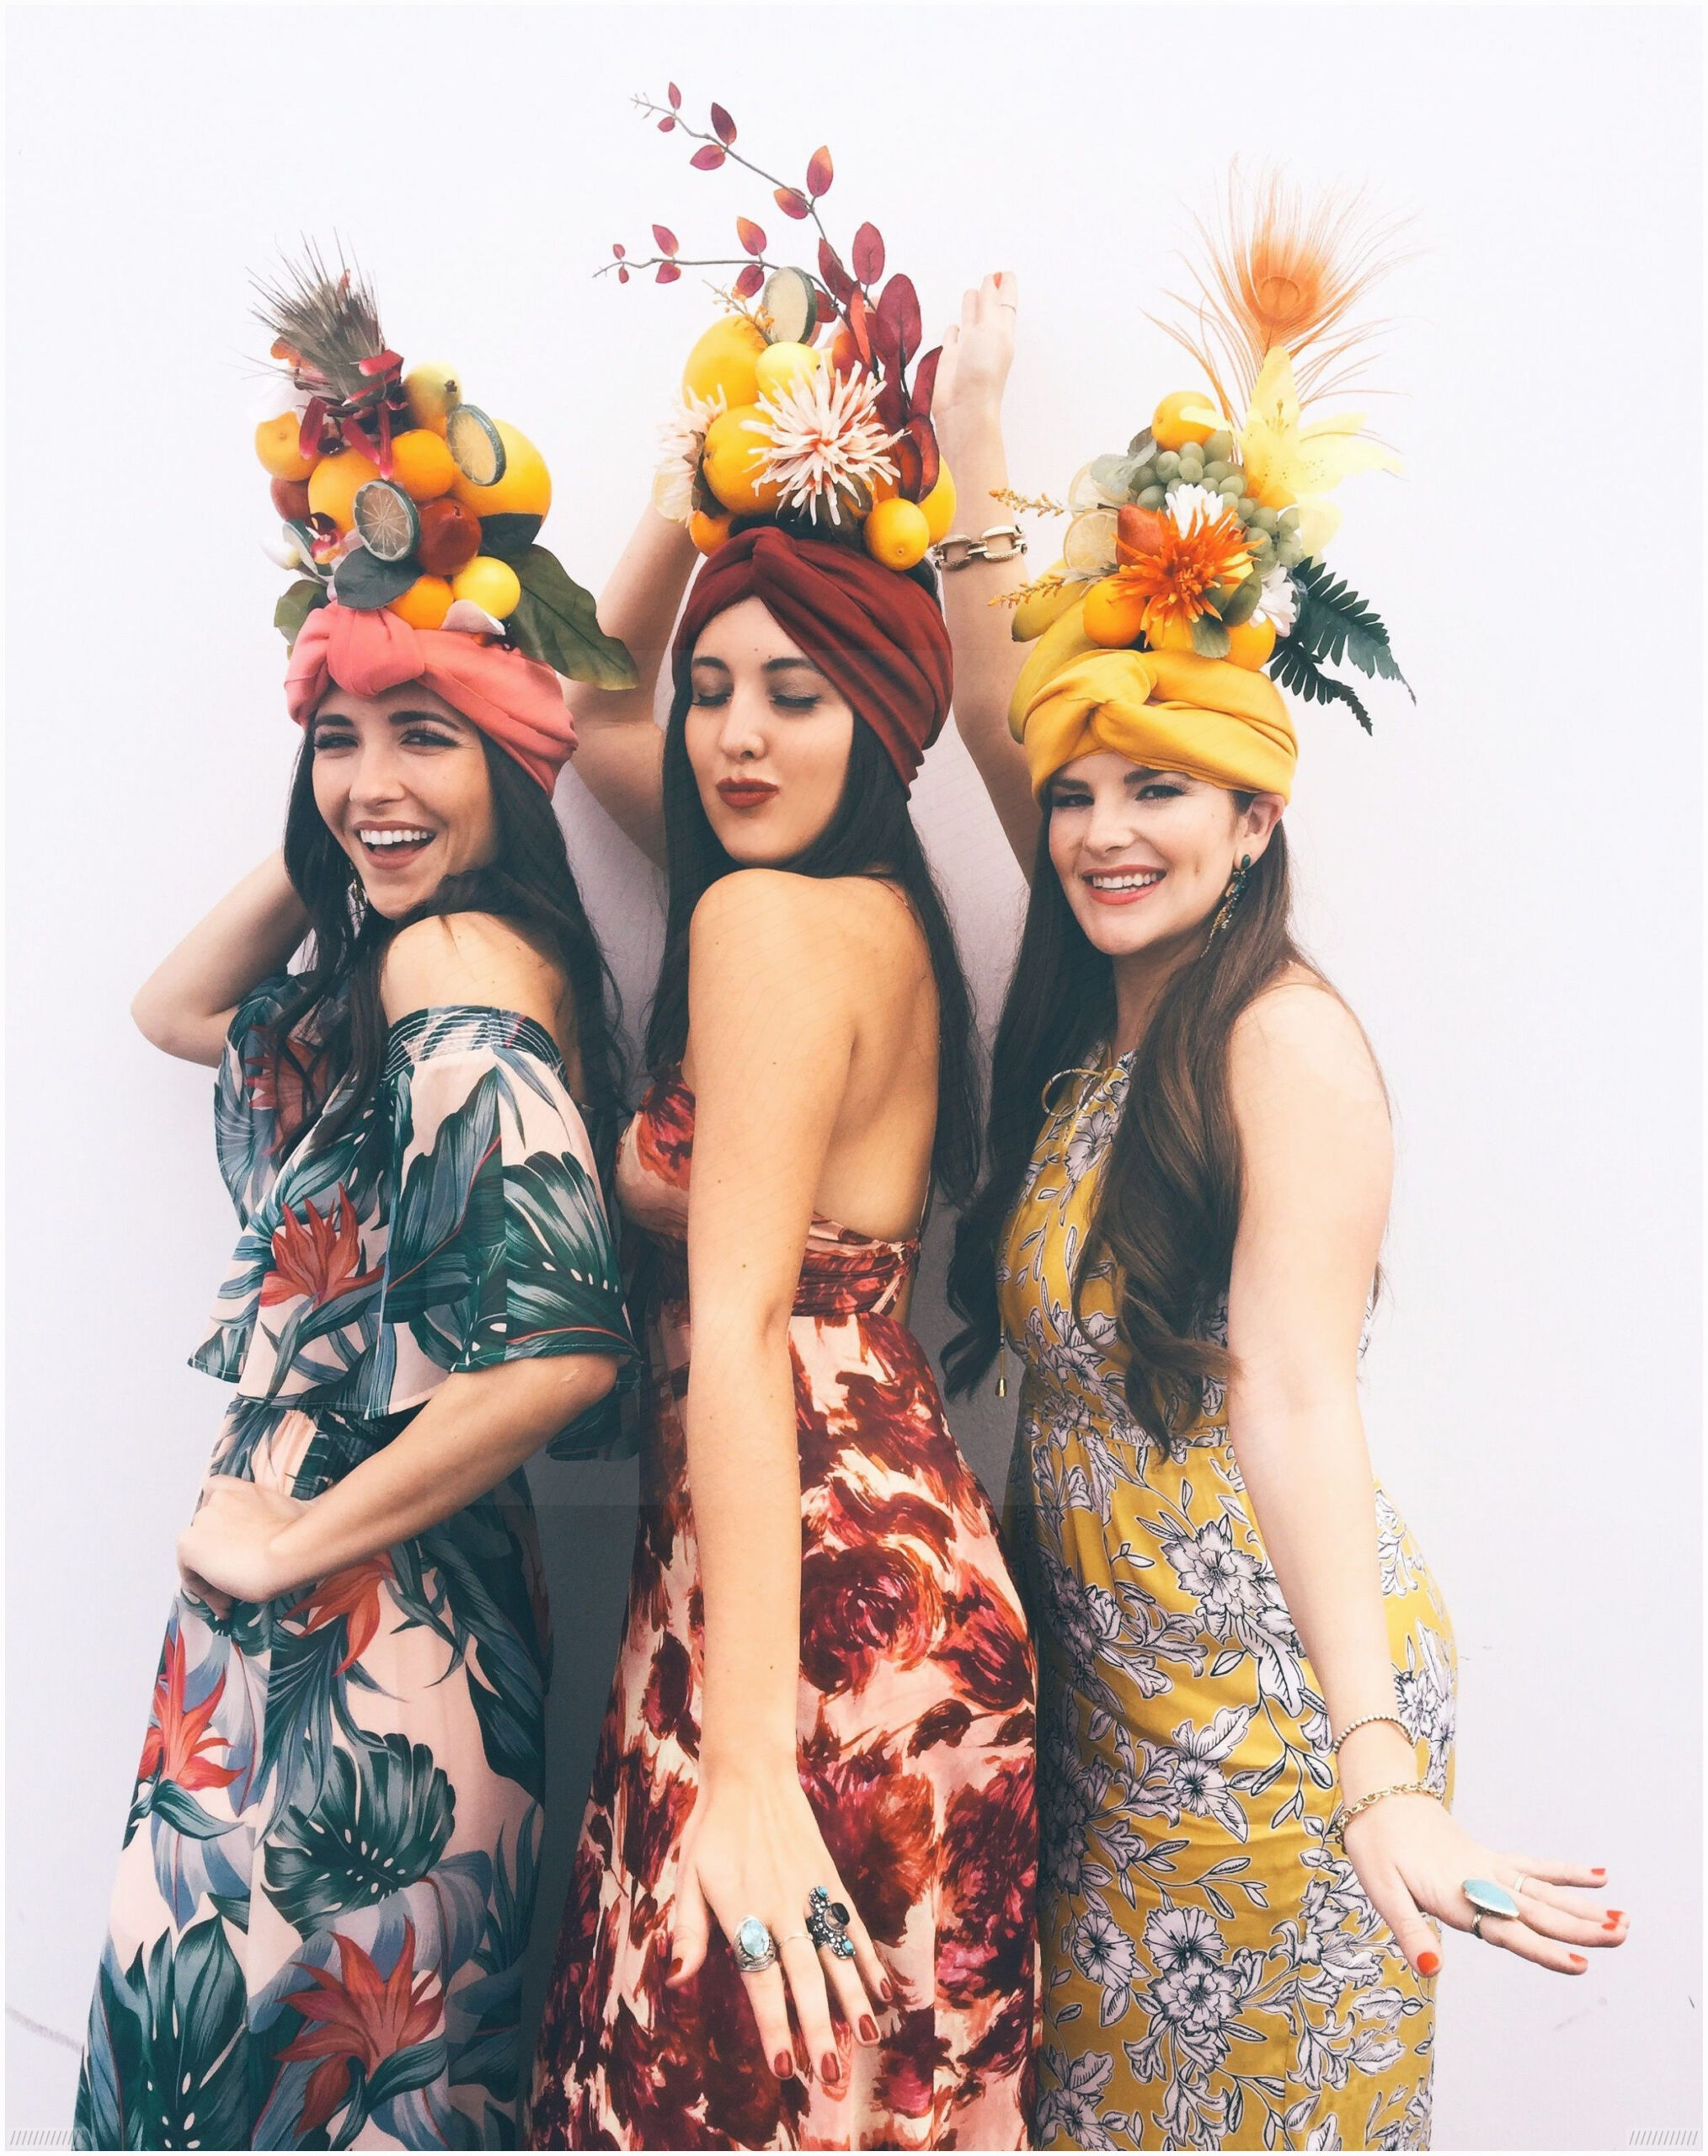 #Frutti #Für #Mädels #Süße #Tutti #Verkleidung Tutti Frutti Mädels über Kostüm Für 3 Mädels